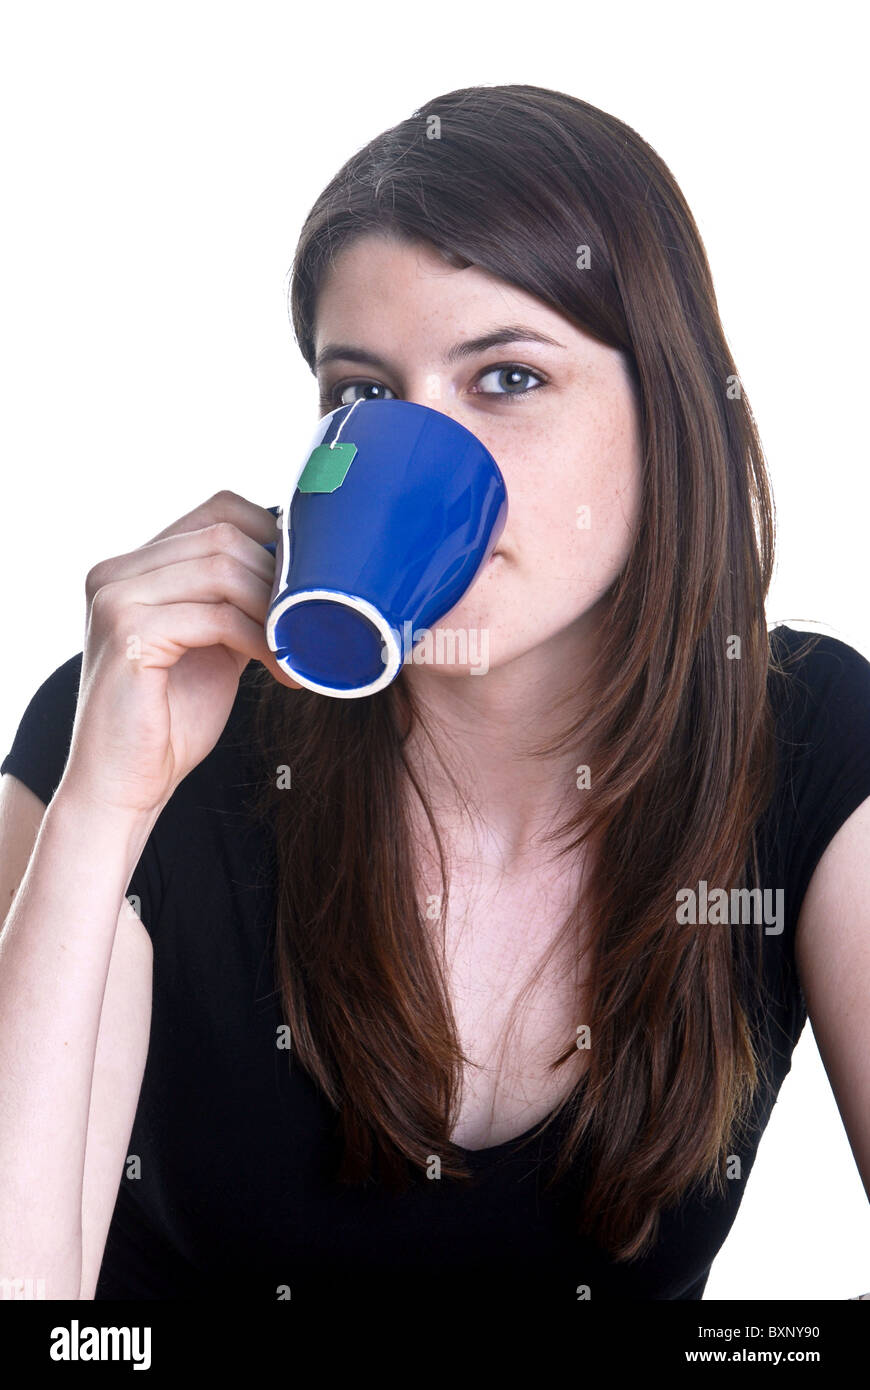 Woman drinking tea Stock Photo